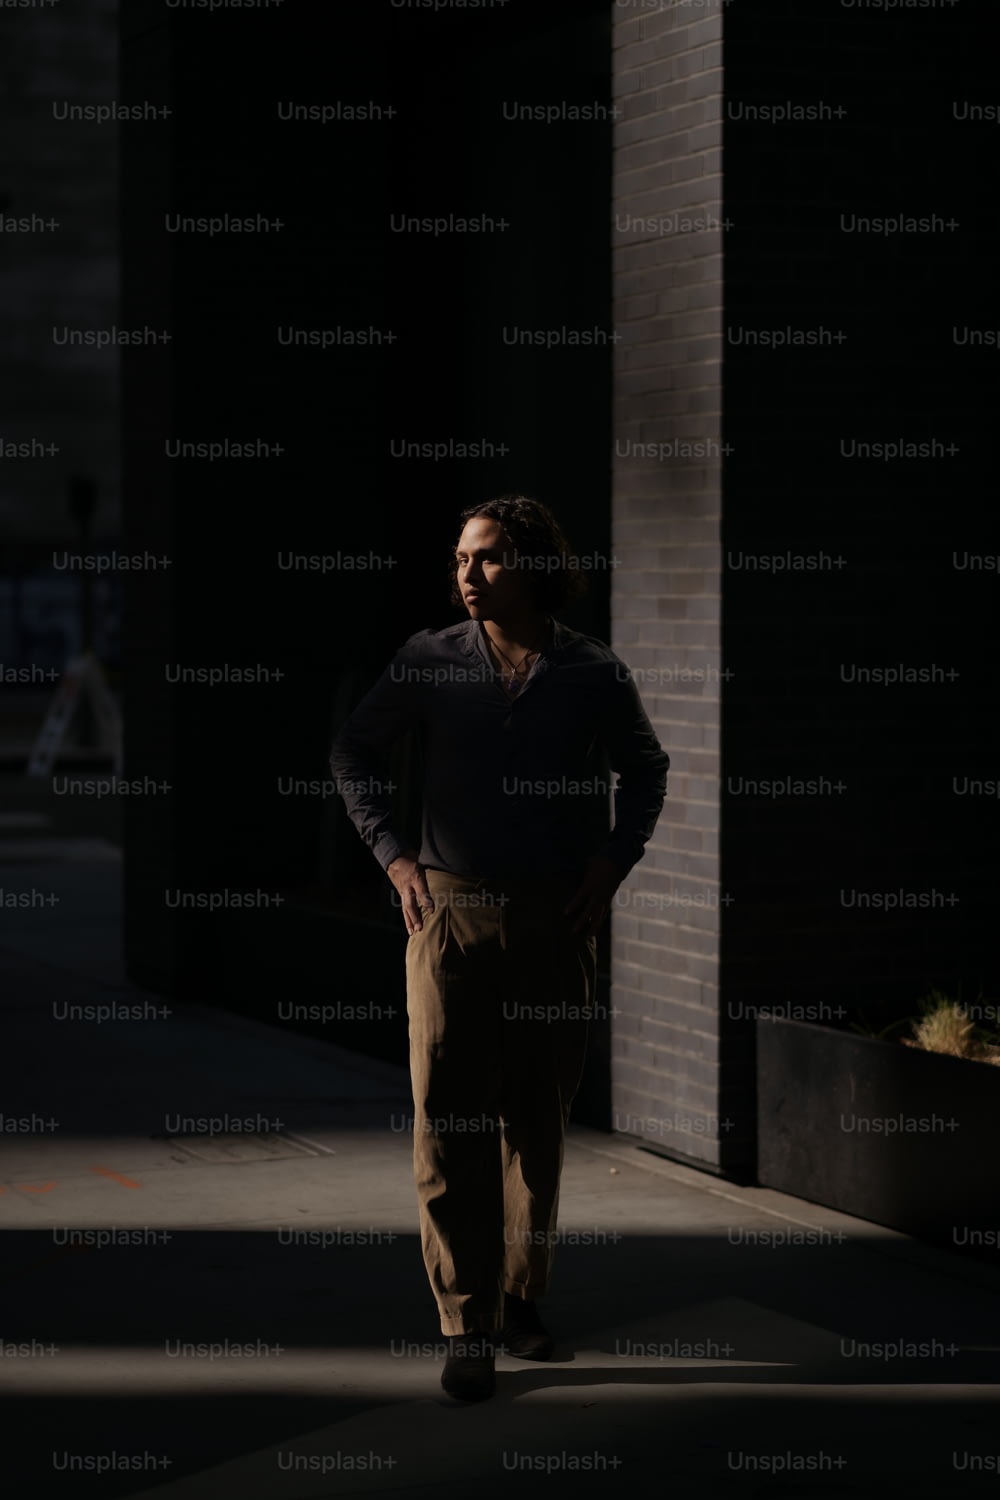 Un homme debout sur un trottoir dans le noir